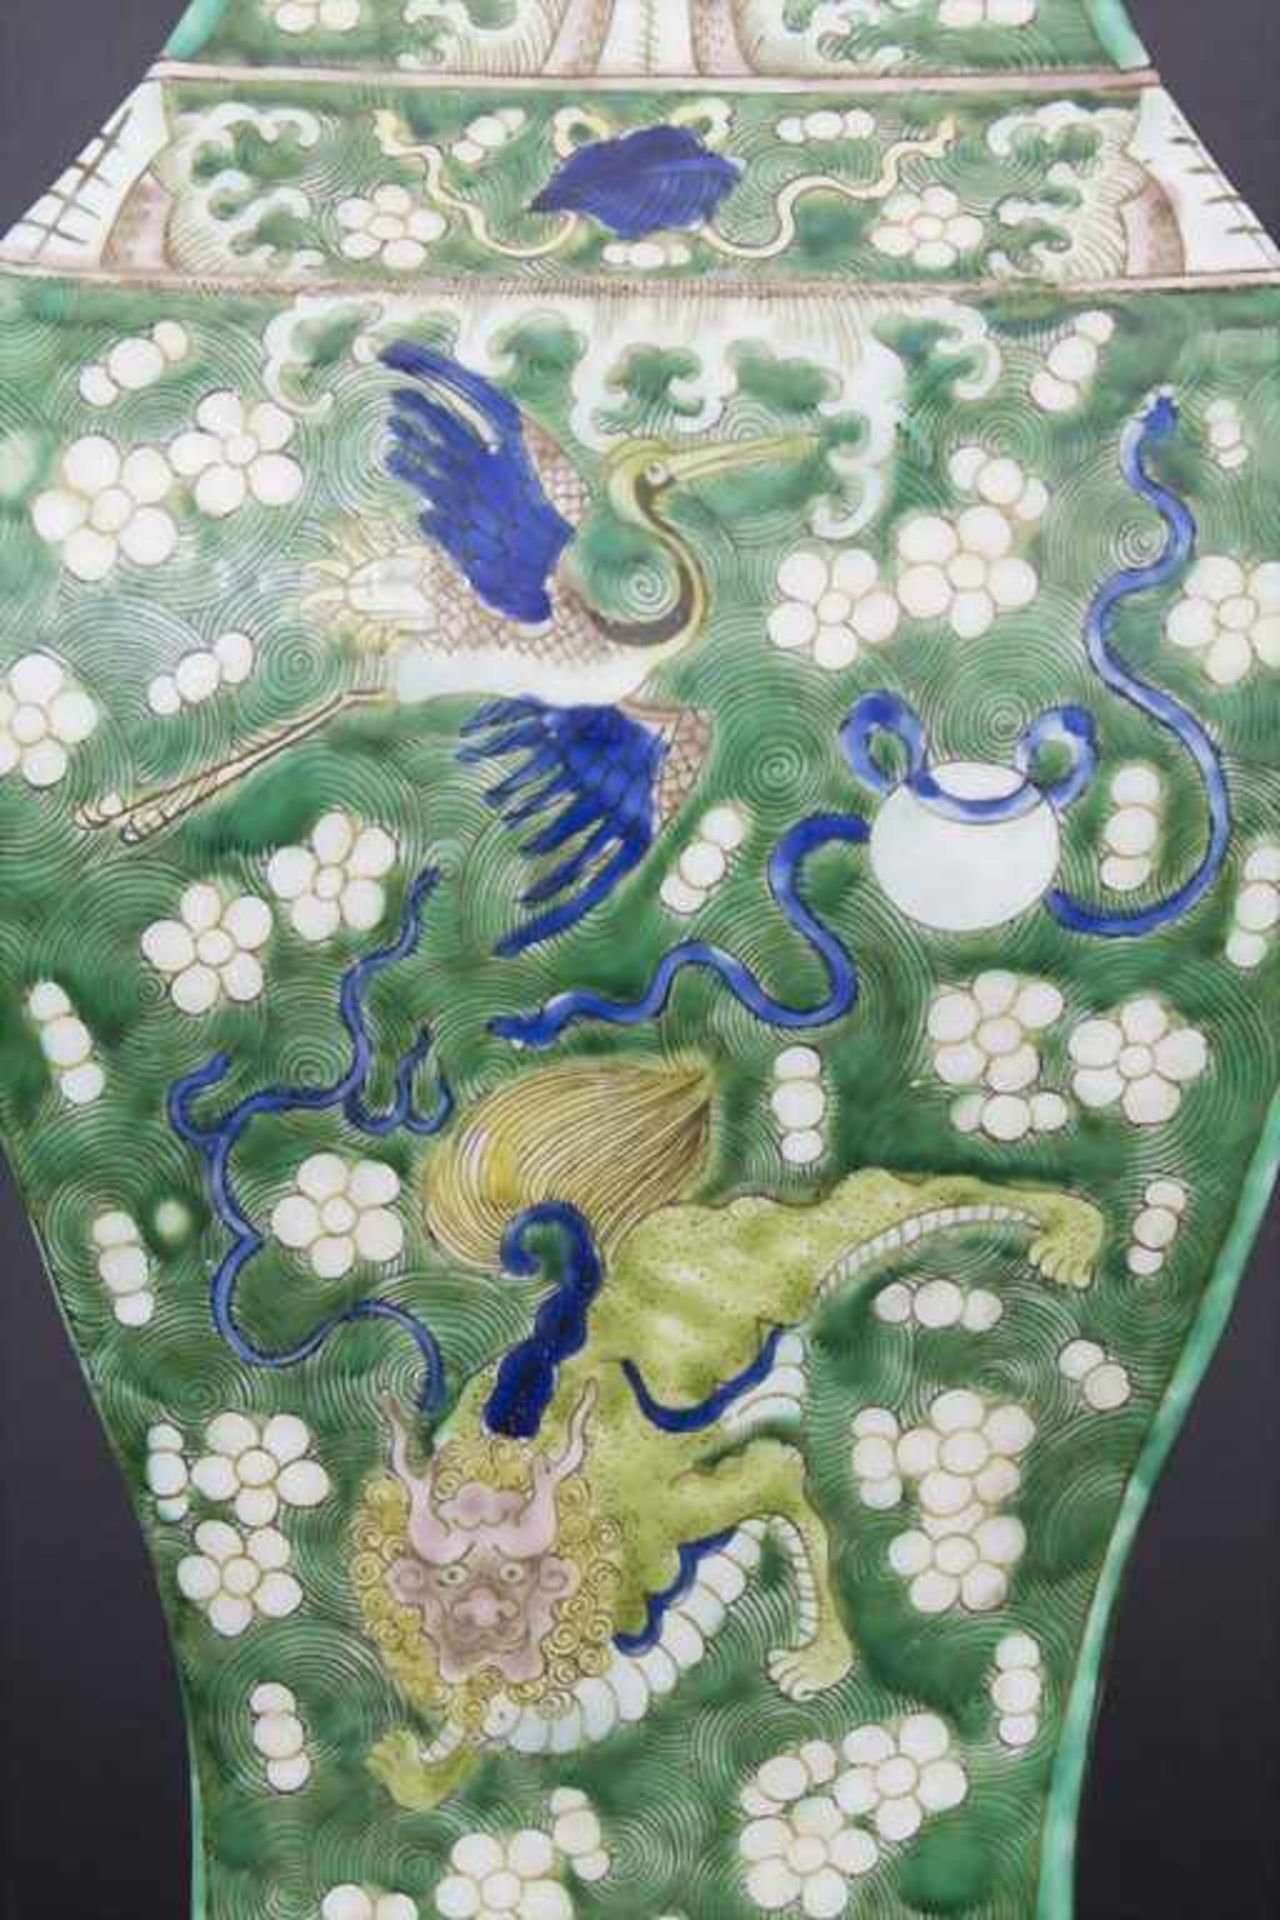 Ziervase, China, späte Qing-Dynastie, 19./20. Jh.Material: Porzellan, polychrom bemalt,Marke/ - Bild 16 aus 17